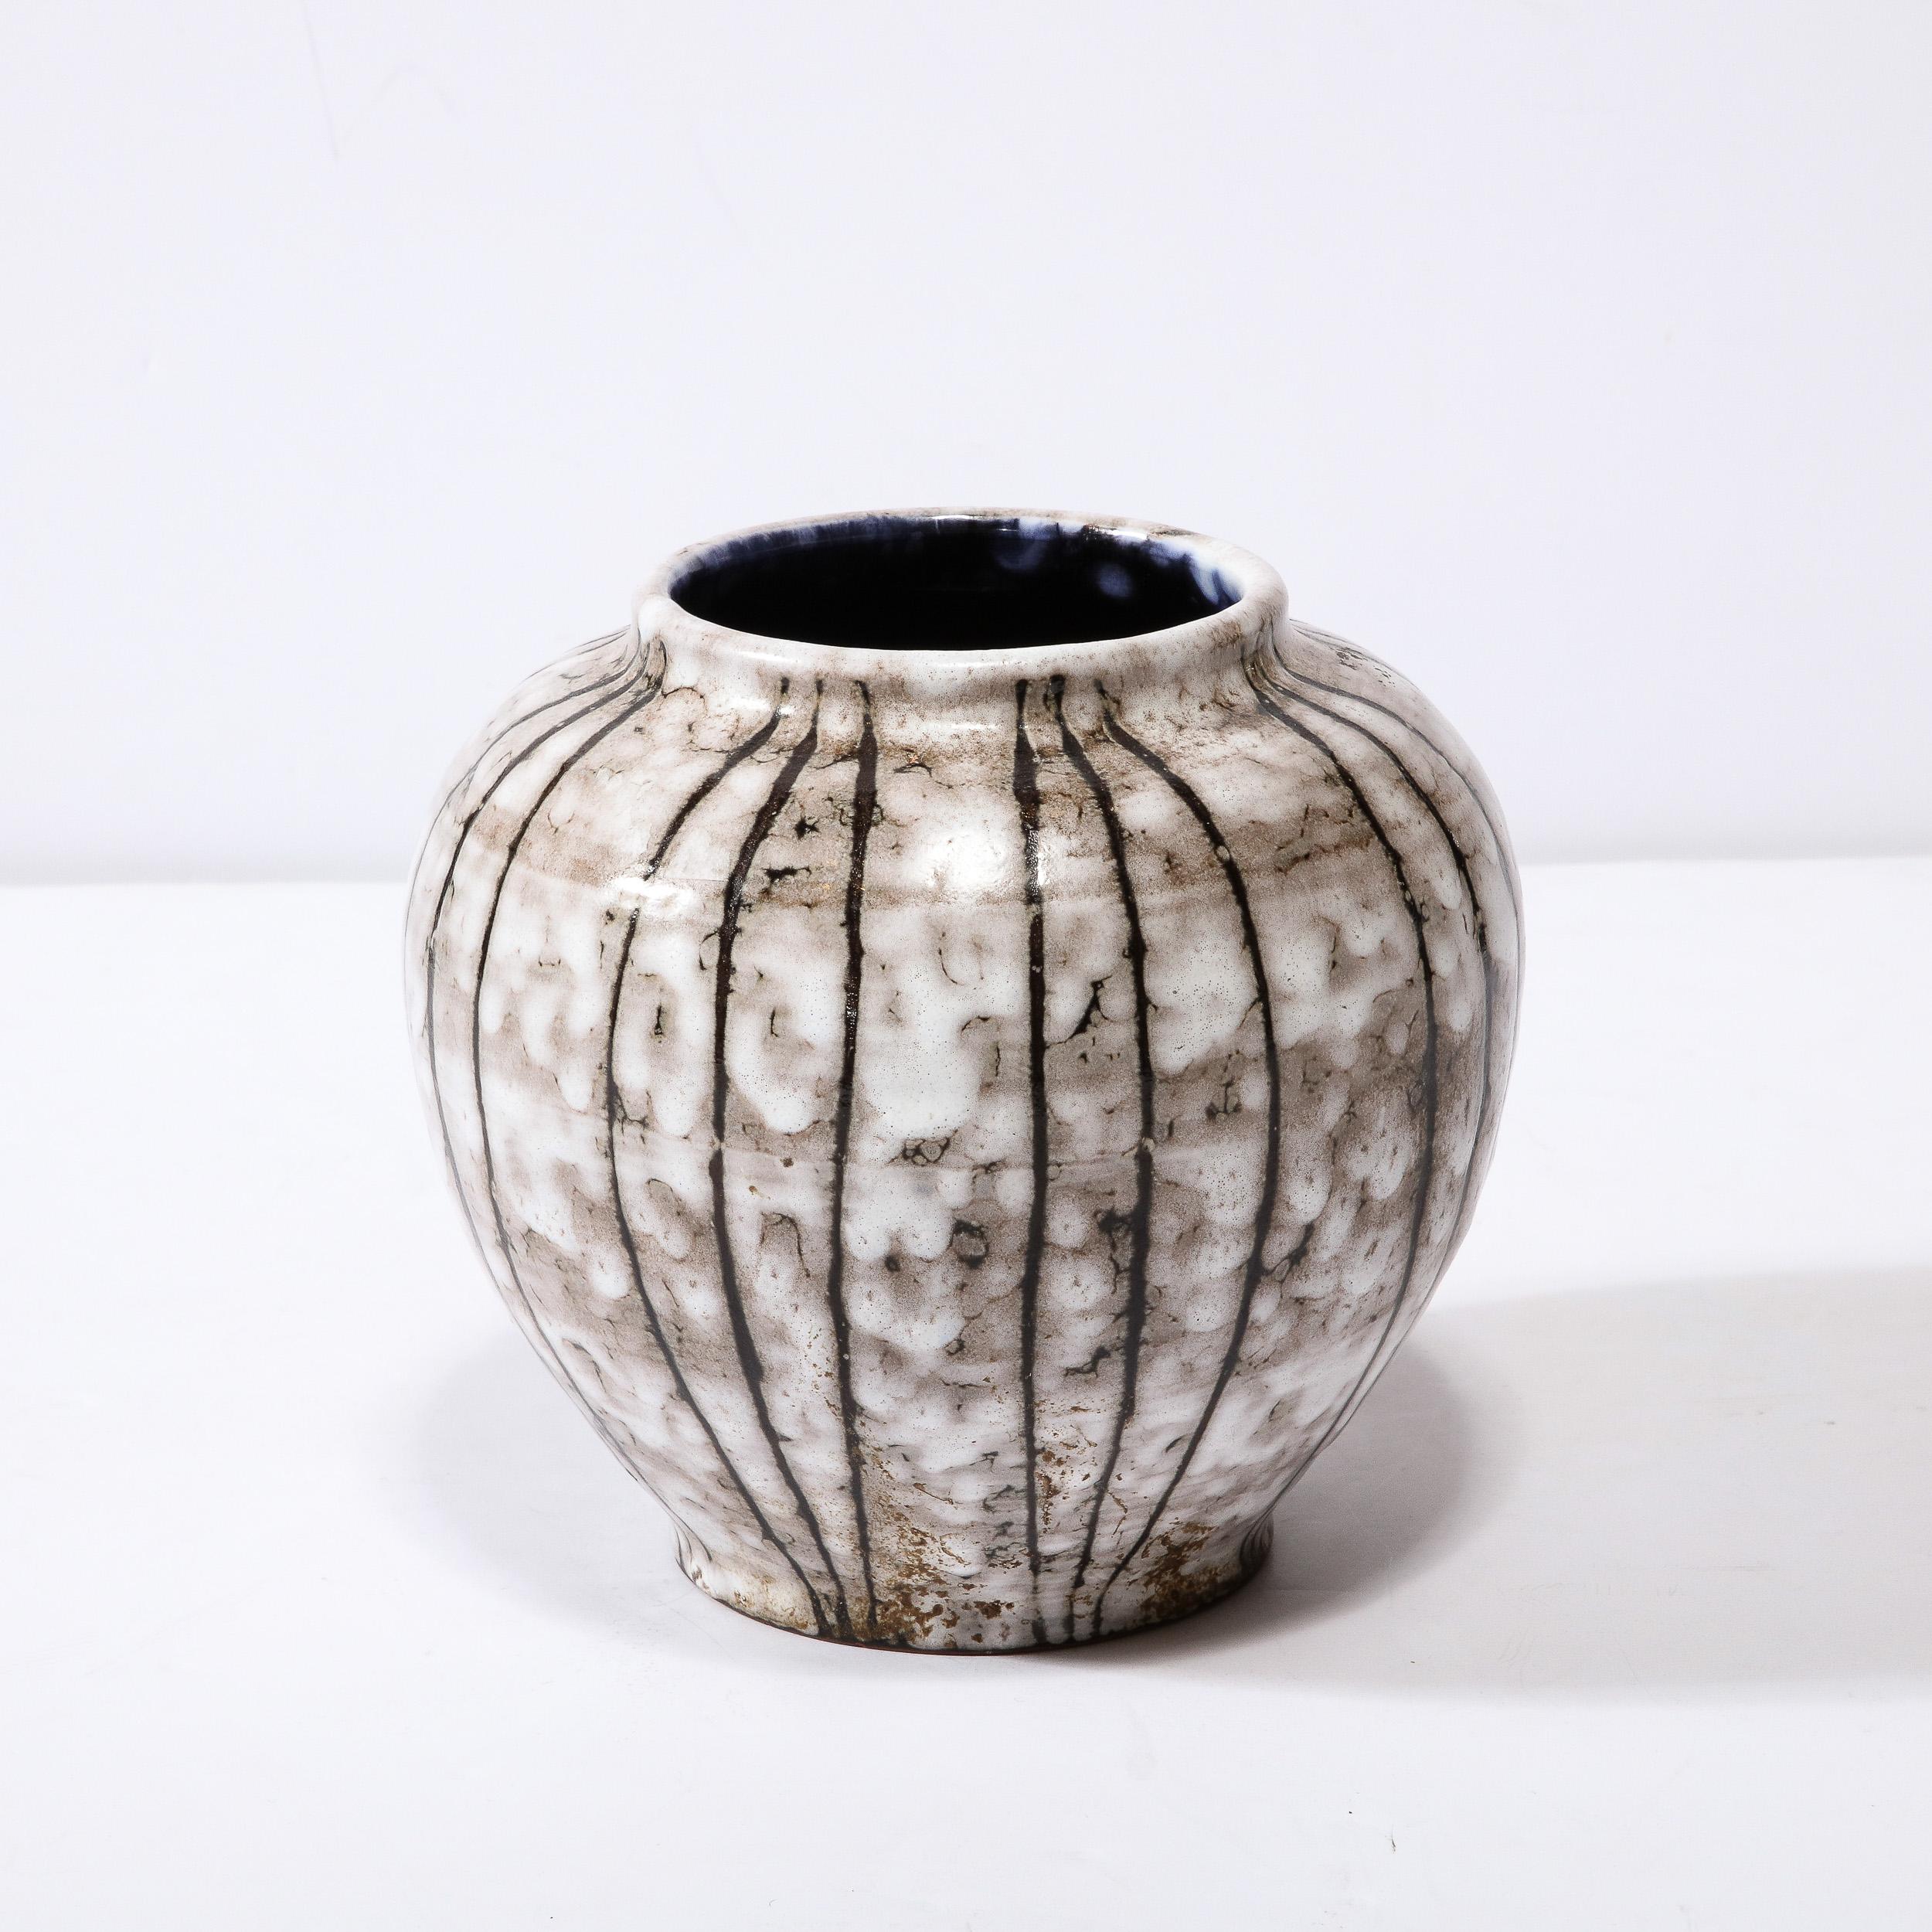 Diese Mid-Century Modernist Keramik Vase W / Bowed Line Arbeit ist ein schönes Beispiel der Nachkriegszeit europäischen Keramik, realisiert in Hódmezővasarhely Majolikagyár, Ungarn Circa 1960. Die Oberfläche jeder Vase hat eine atemberaubende